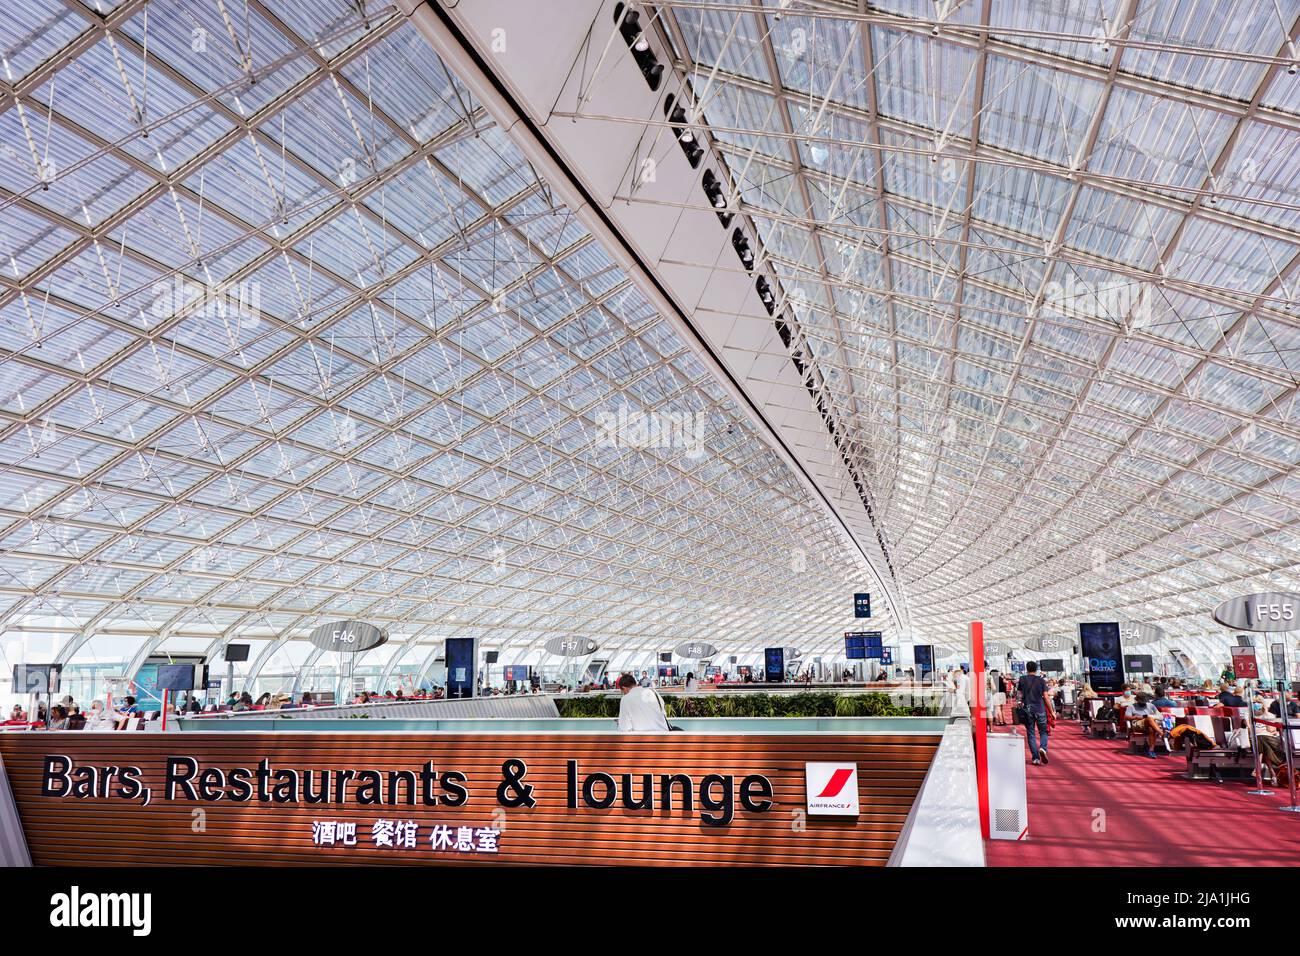 Una de las terminales del aeropuerto Charles de Gaulle (también conocido como aeropuerto Roissy), París, Francia, Europa. Foto de stock